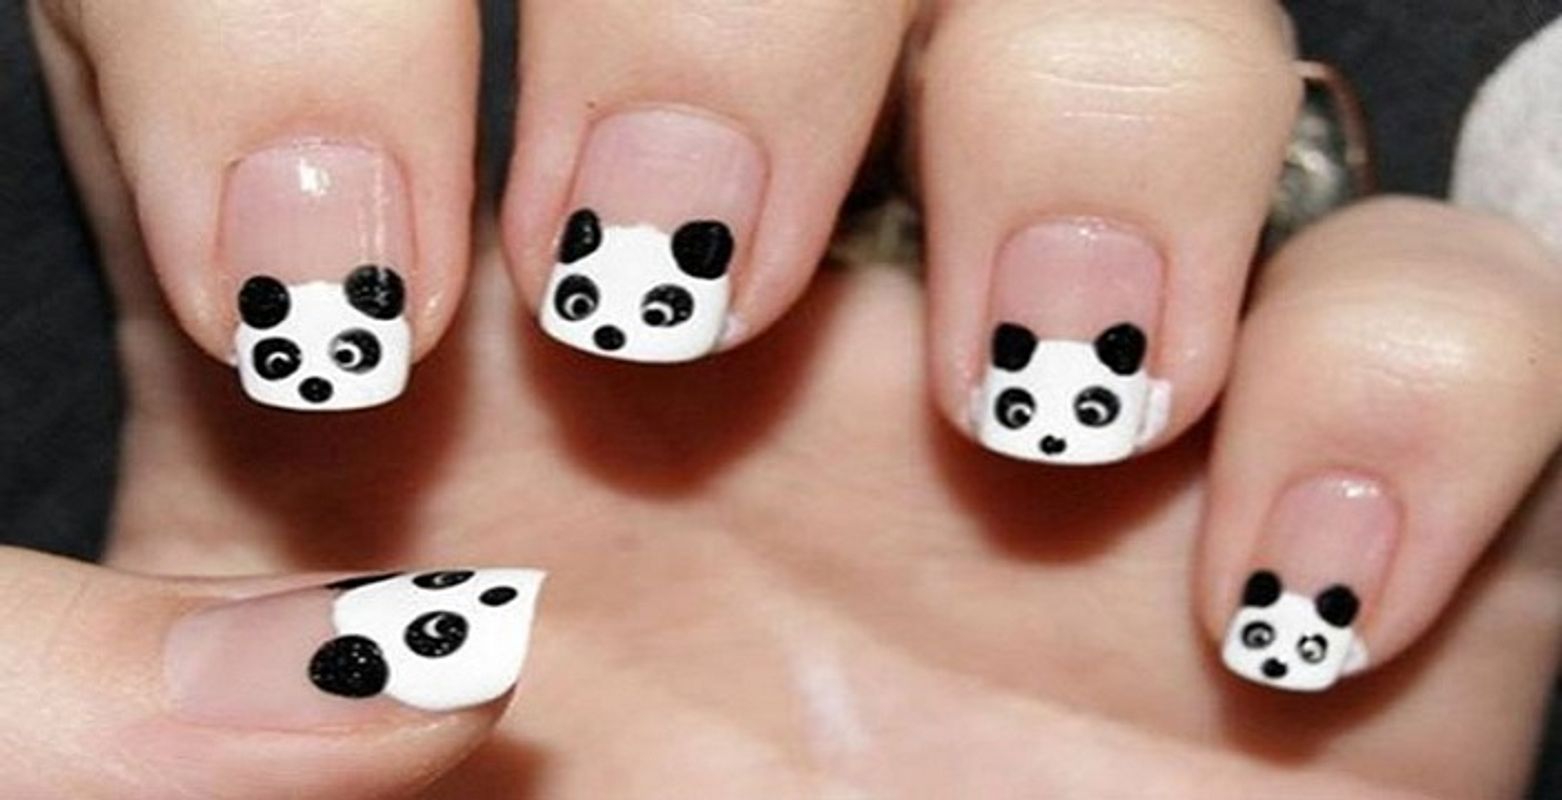 Cute Panda Nail Art: Móng tay hình gấu trúc đáng yêu sẽ làm bạn mê mẩn ngay từ cái nhìn đầu tiên. Với những họa tiết đáng yêu và trong sáng, móng tay hình gấu trúc sẽ kèm theo một chút tình cảm và lãng mạn. Hãy xem hình ảnh để khám phá những thiết kế móng tay xinh xắn này nhé!